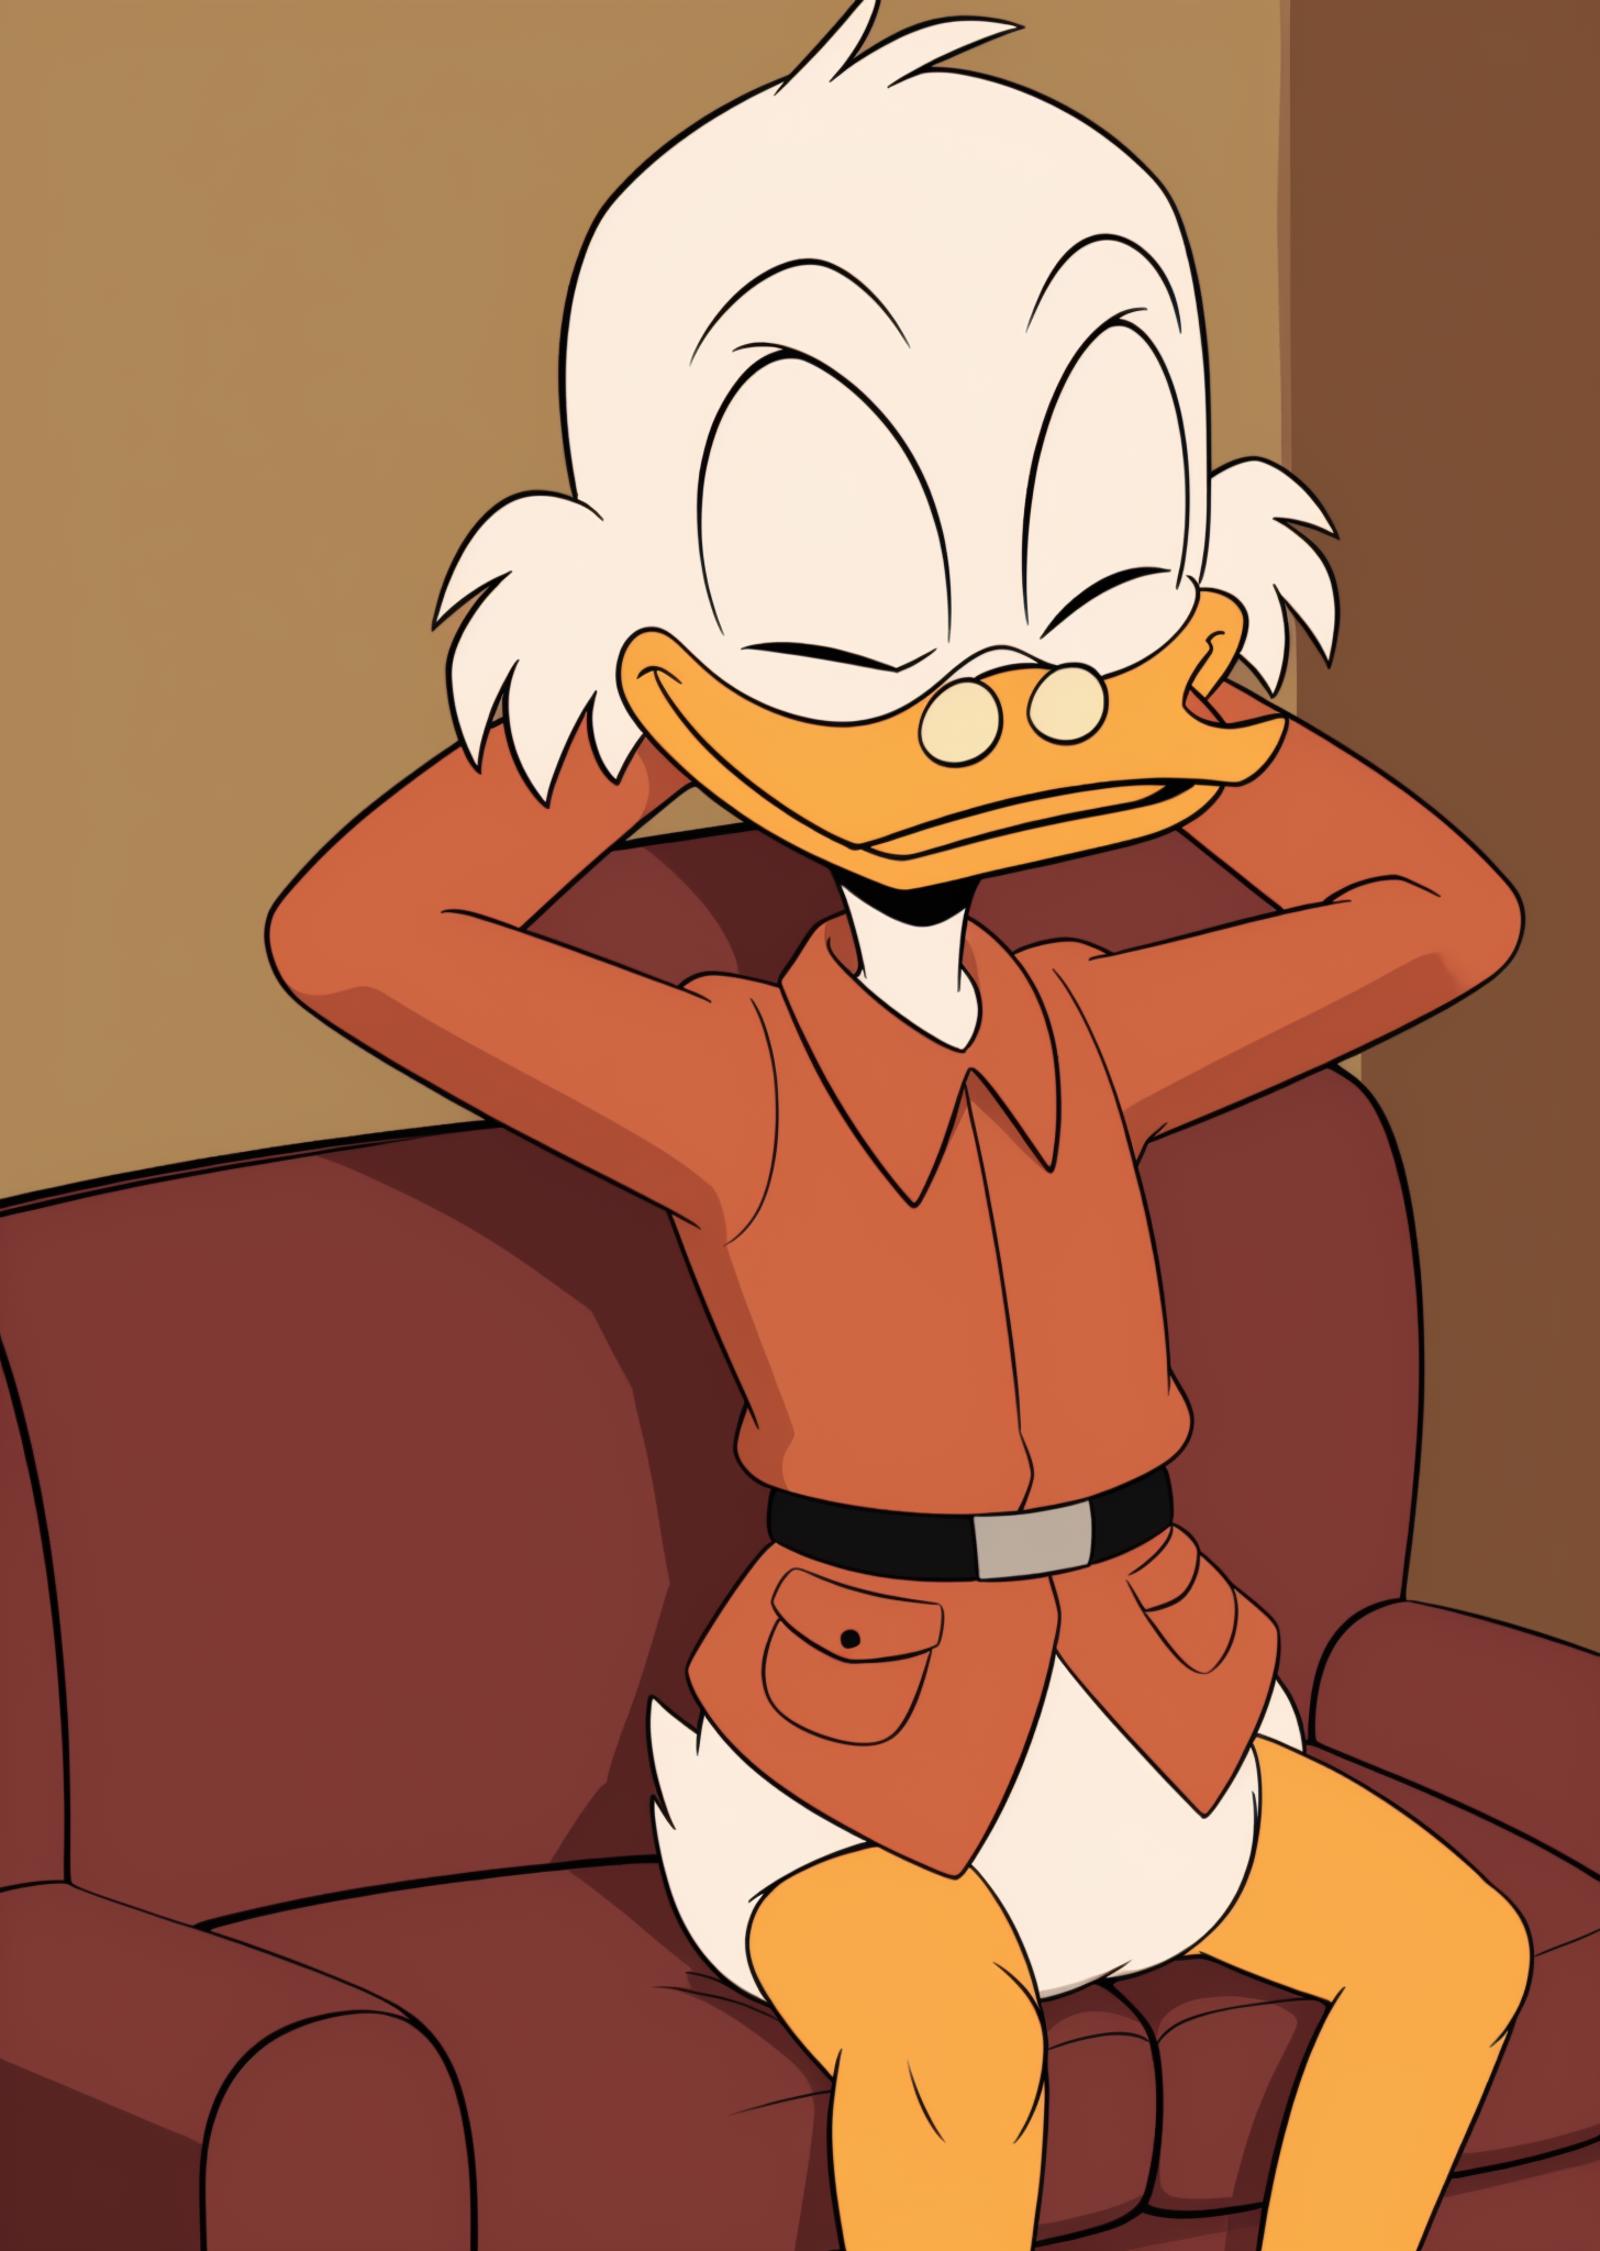 Scrooge McDuck | Ducktales 2017 image by cloud9999